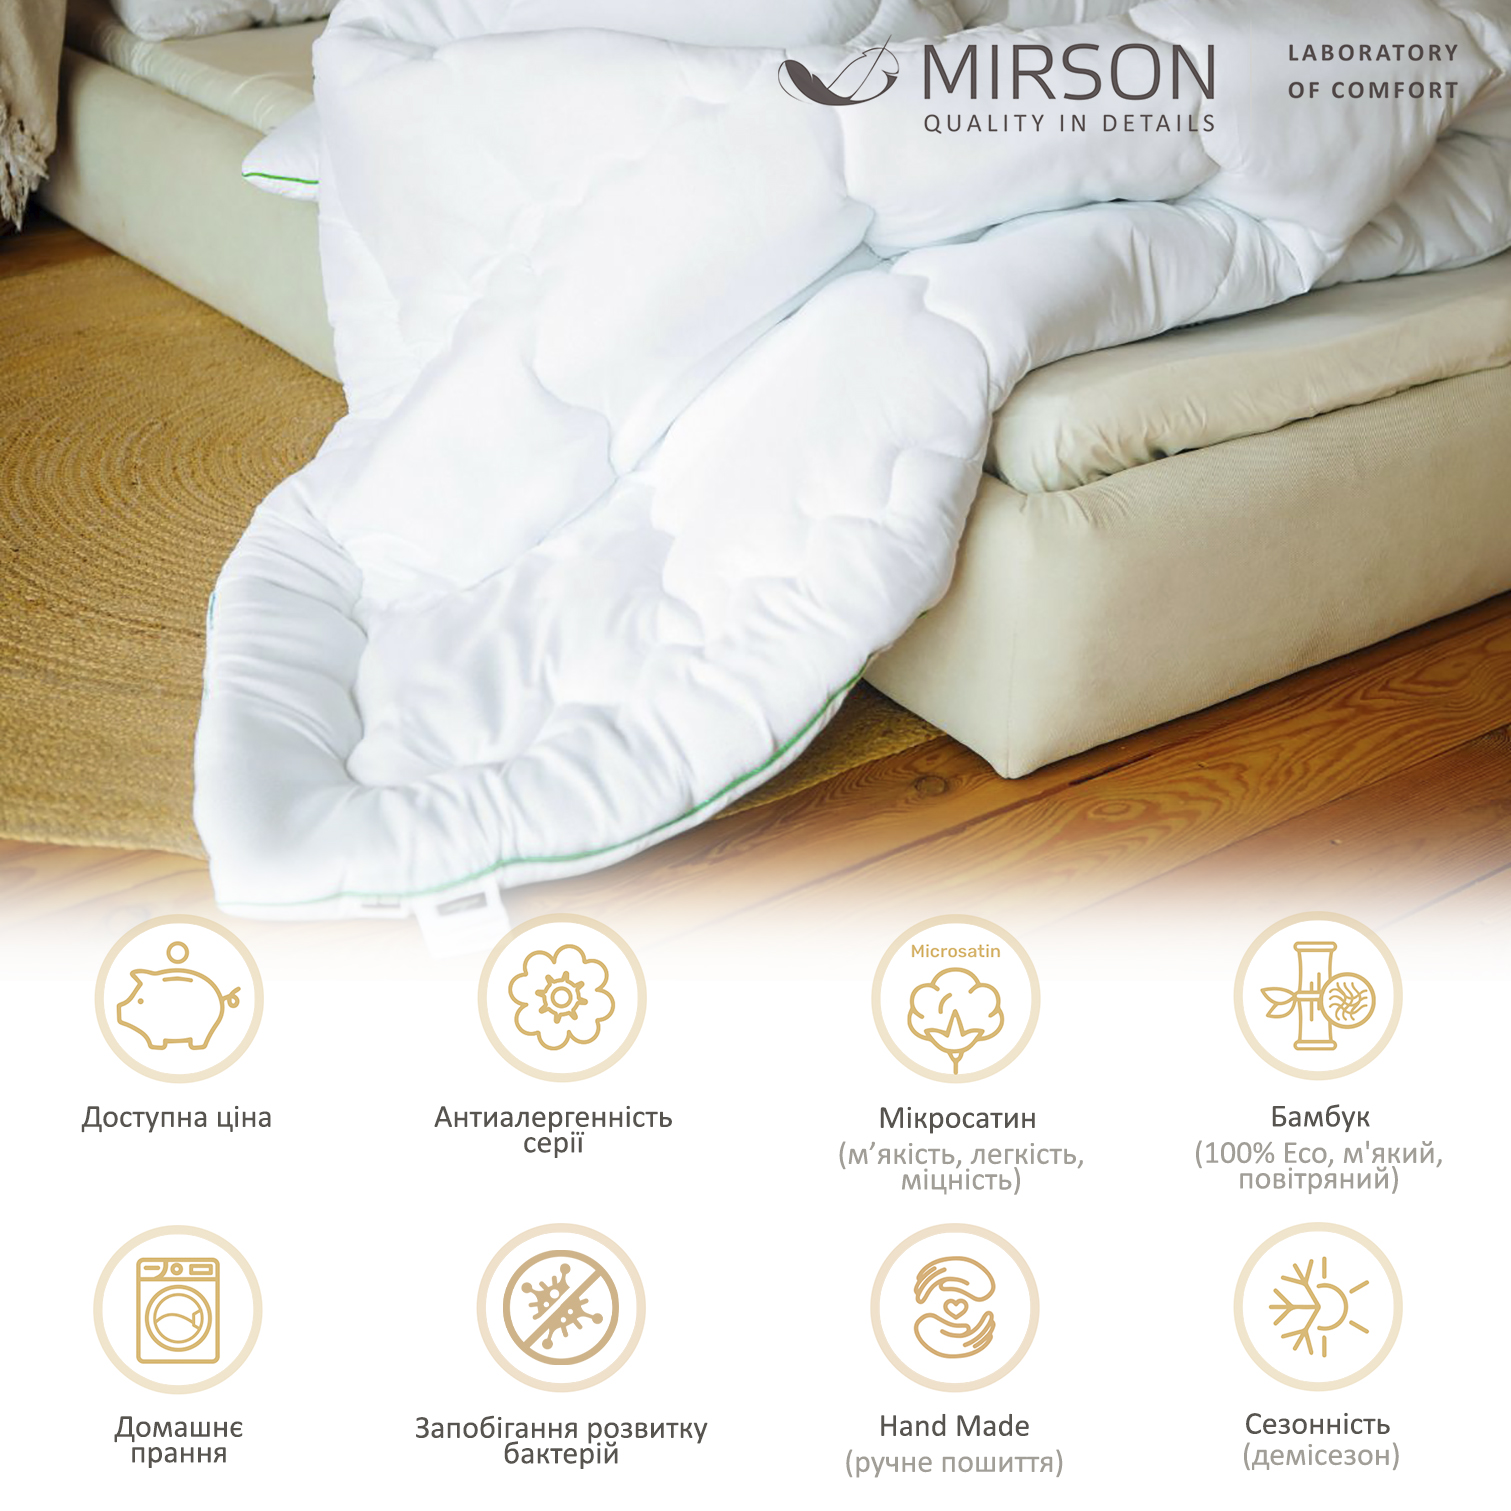 Ковдра бамбукова MirSon Eco Mikrosatin Hand Made №0442, демісезонна, 110x140 см, біла - фото 6